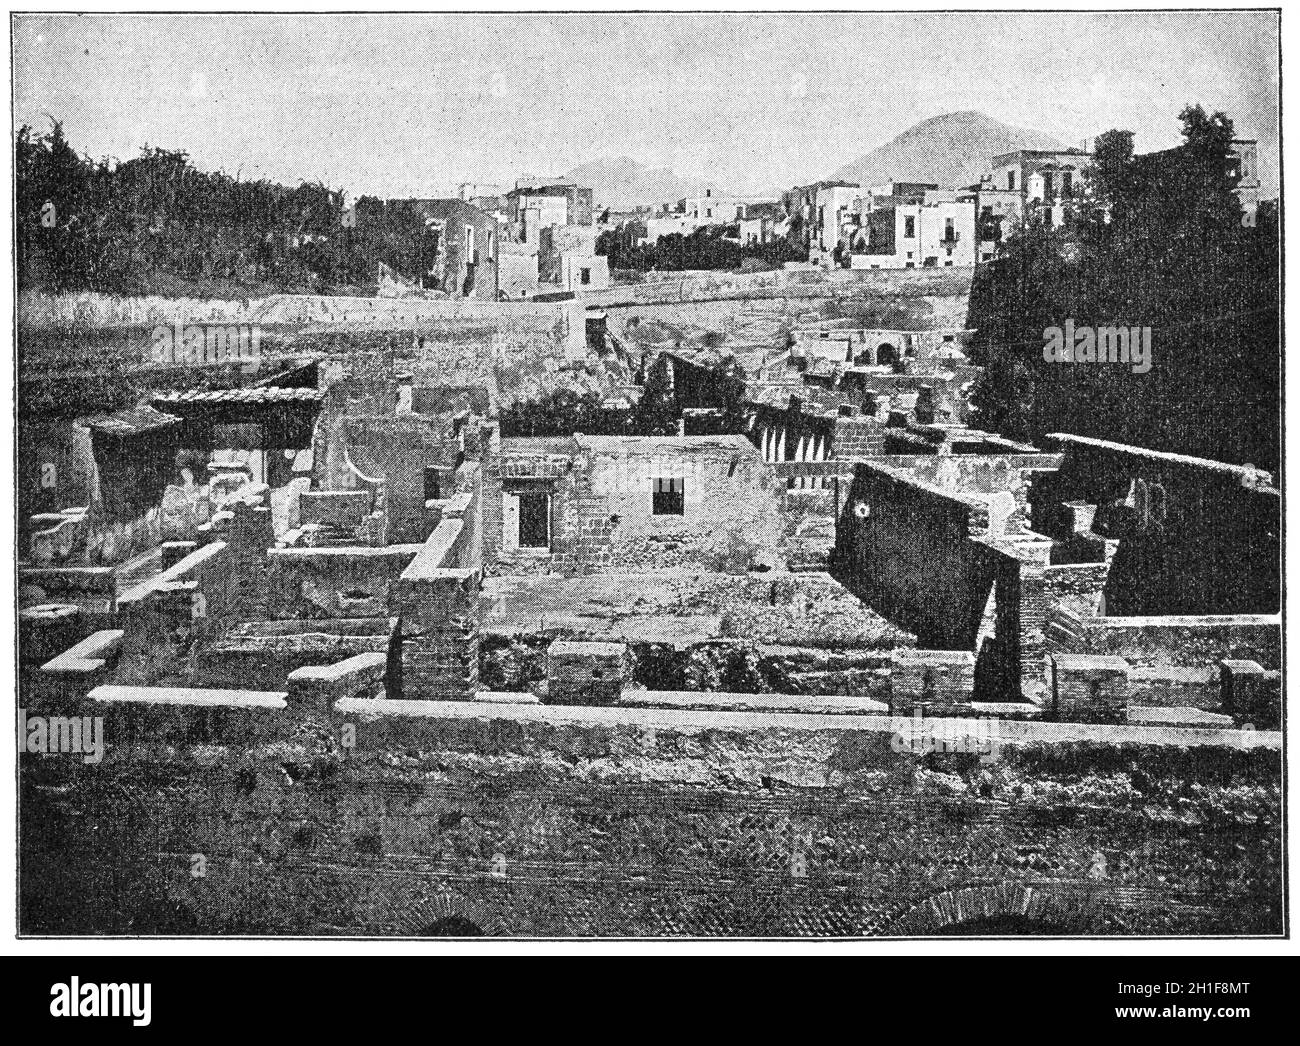 Antica città di Ercolano. La città fu distrutta e sepolta sotto cenere vulcanica e pomice nell'eruzione del Vesuvio nel 79 d.C. Il Foto Stock